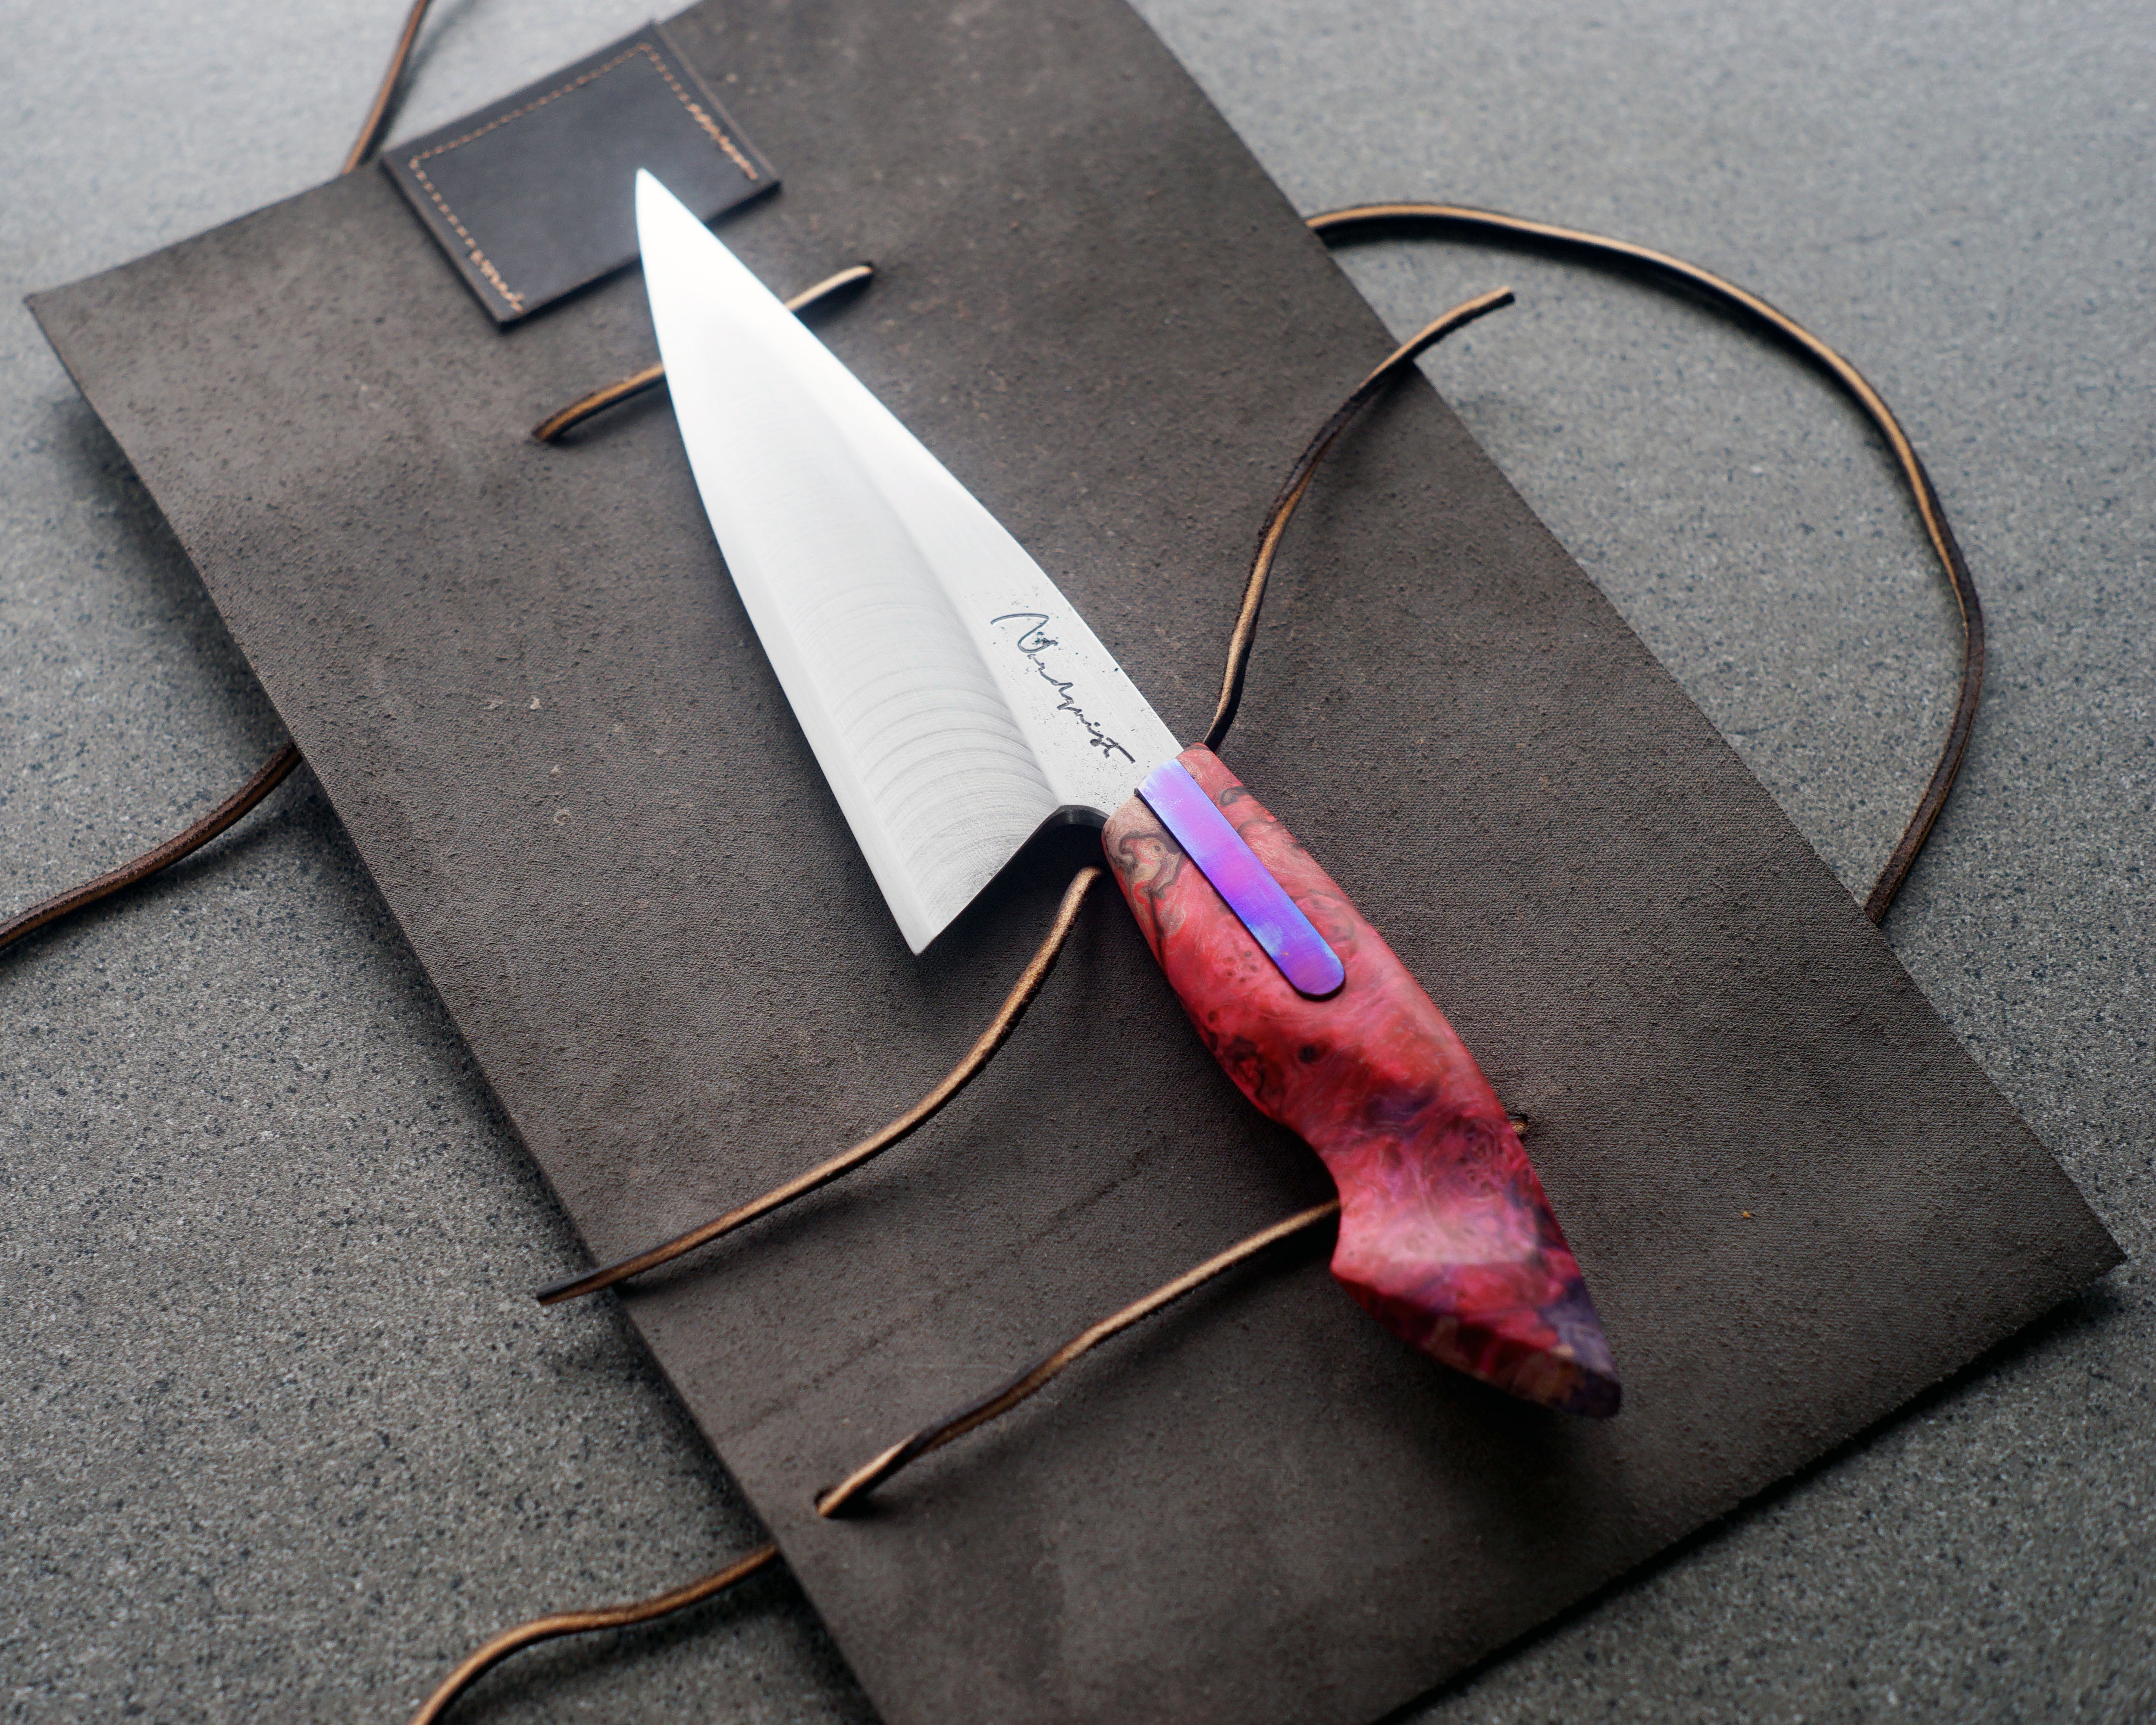 Titanium & Maple Burl S-Grind Chef's Knife